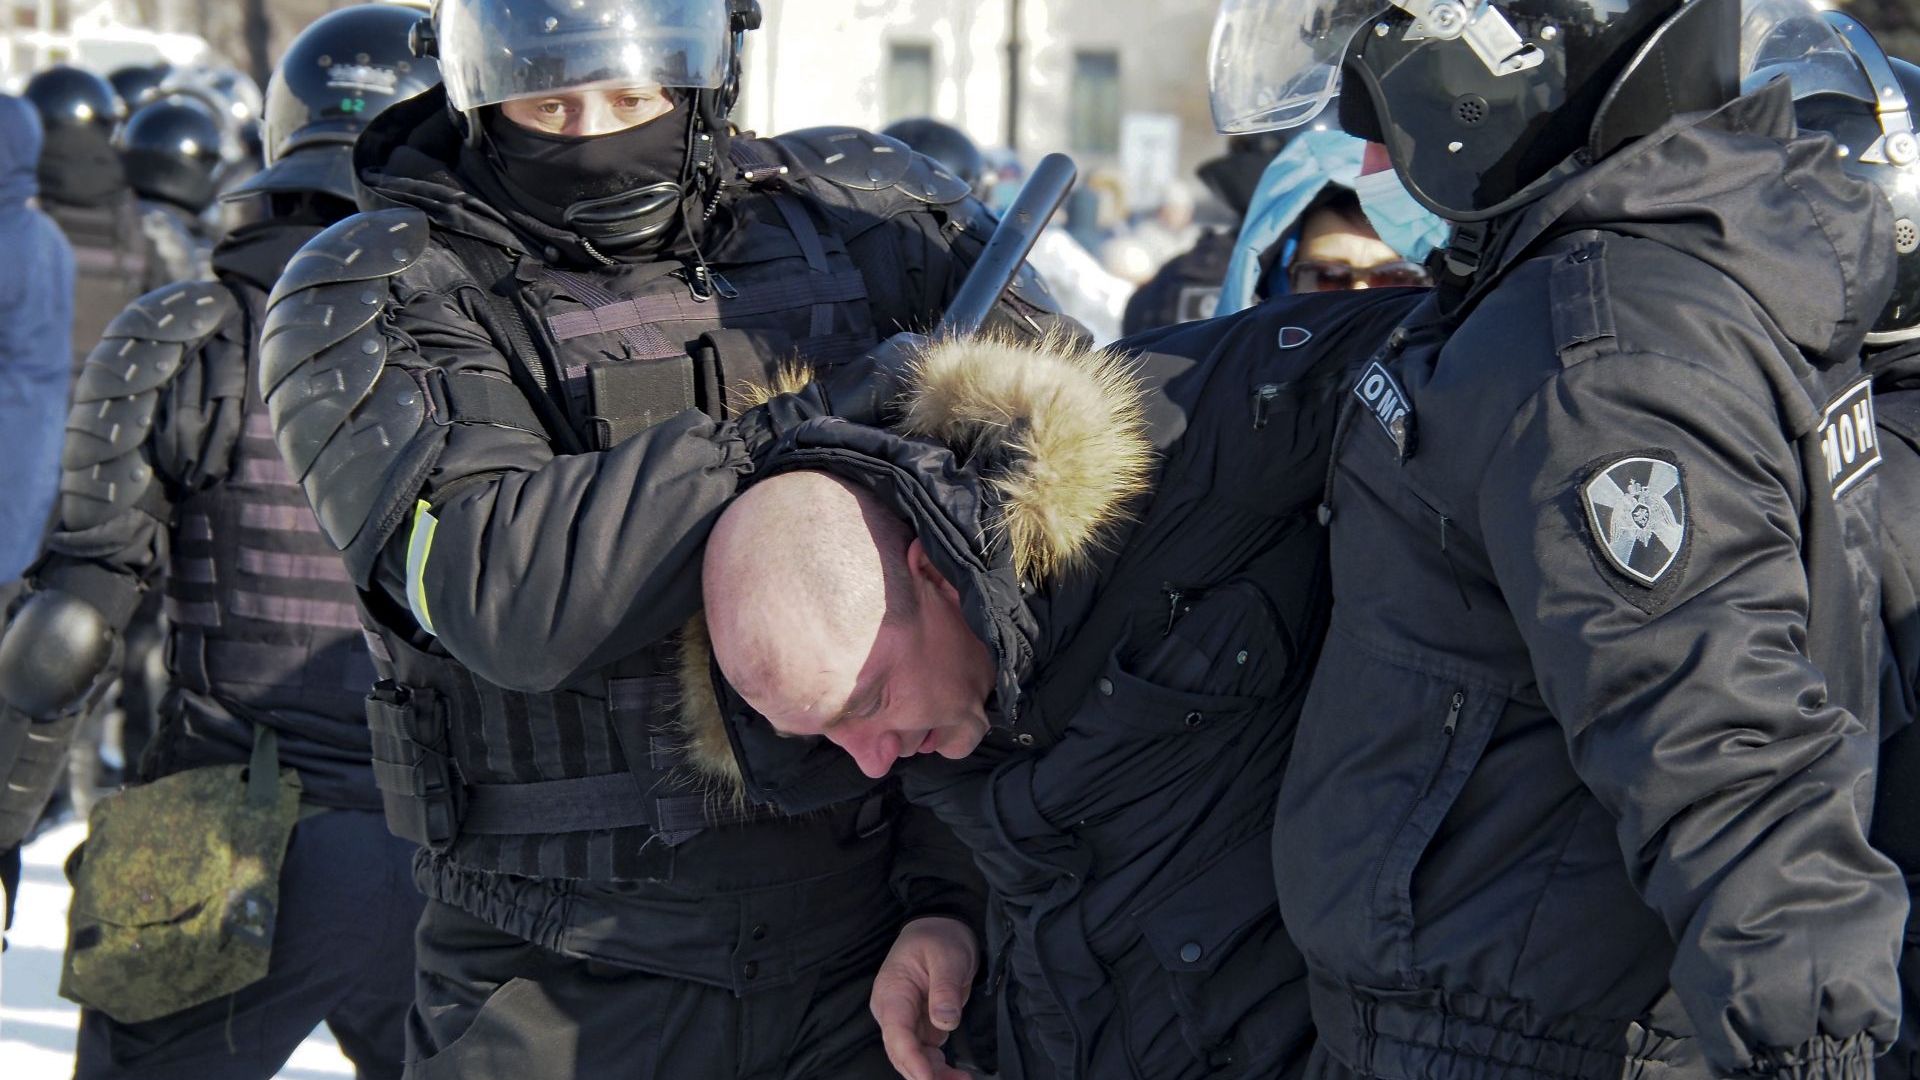 Ден на протести в Русия заради Навални. Десетки арестувани в Далечния изток (видео)